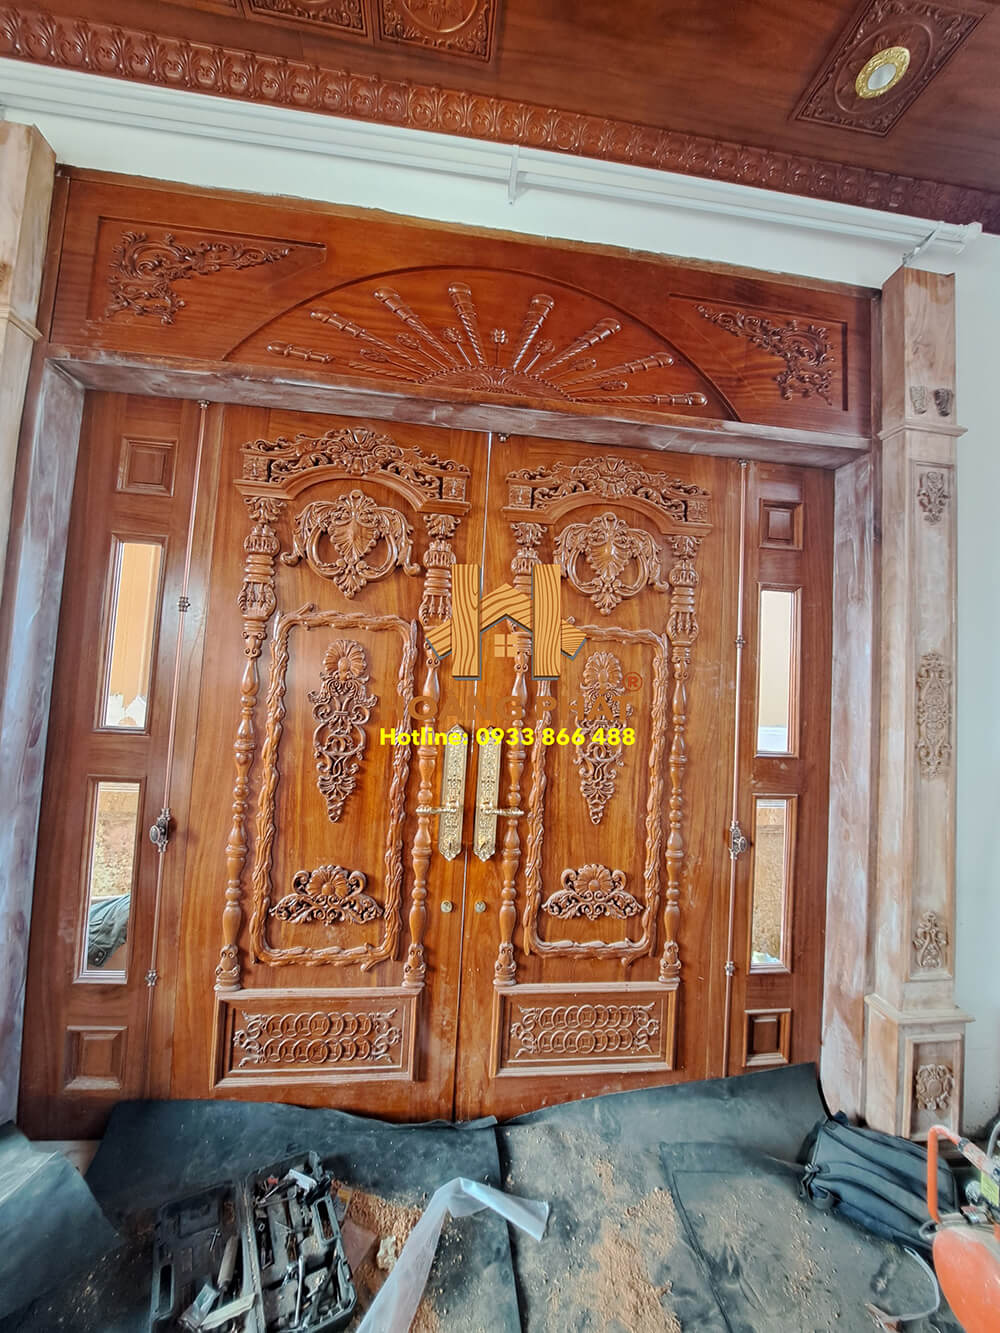 Hoàng Phát thi công trọn gói nội thất gỗ Gõ Đỏ Nam Phi cho biệt thự nhà chị Diệu tại Bình Chánh